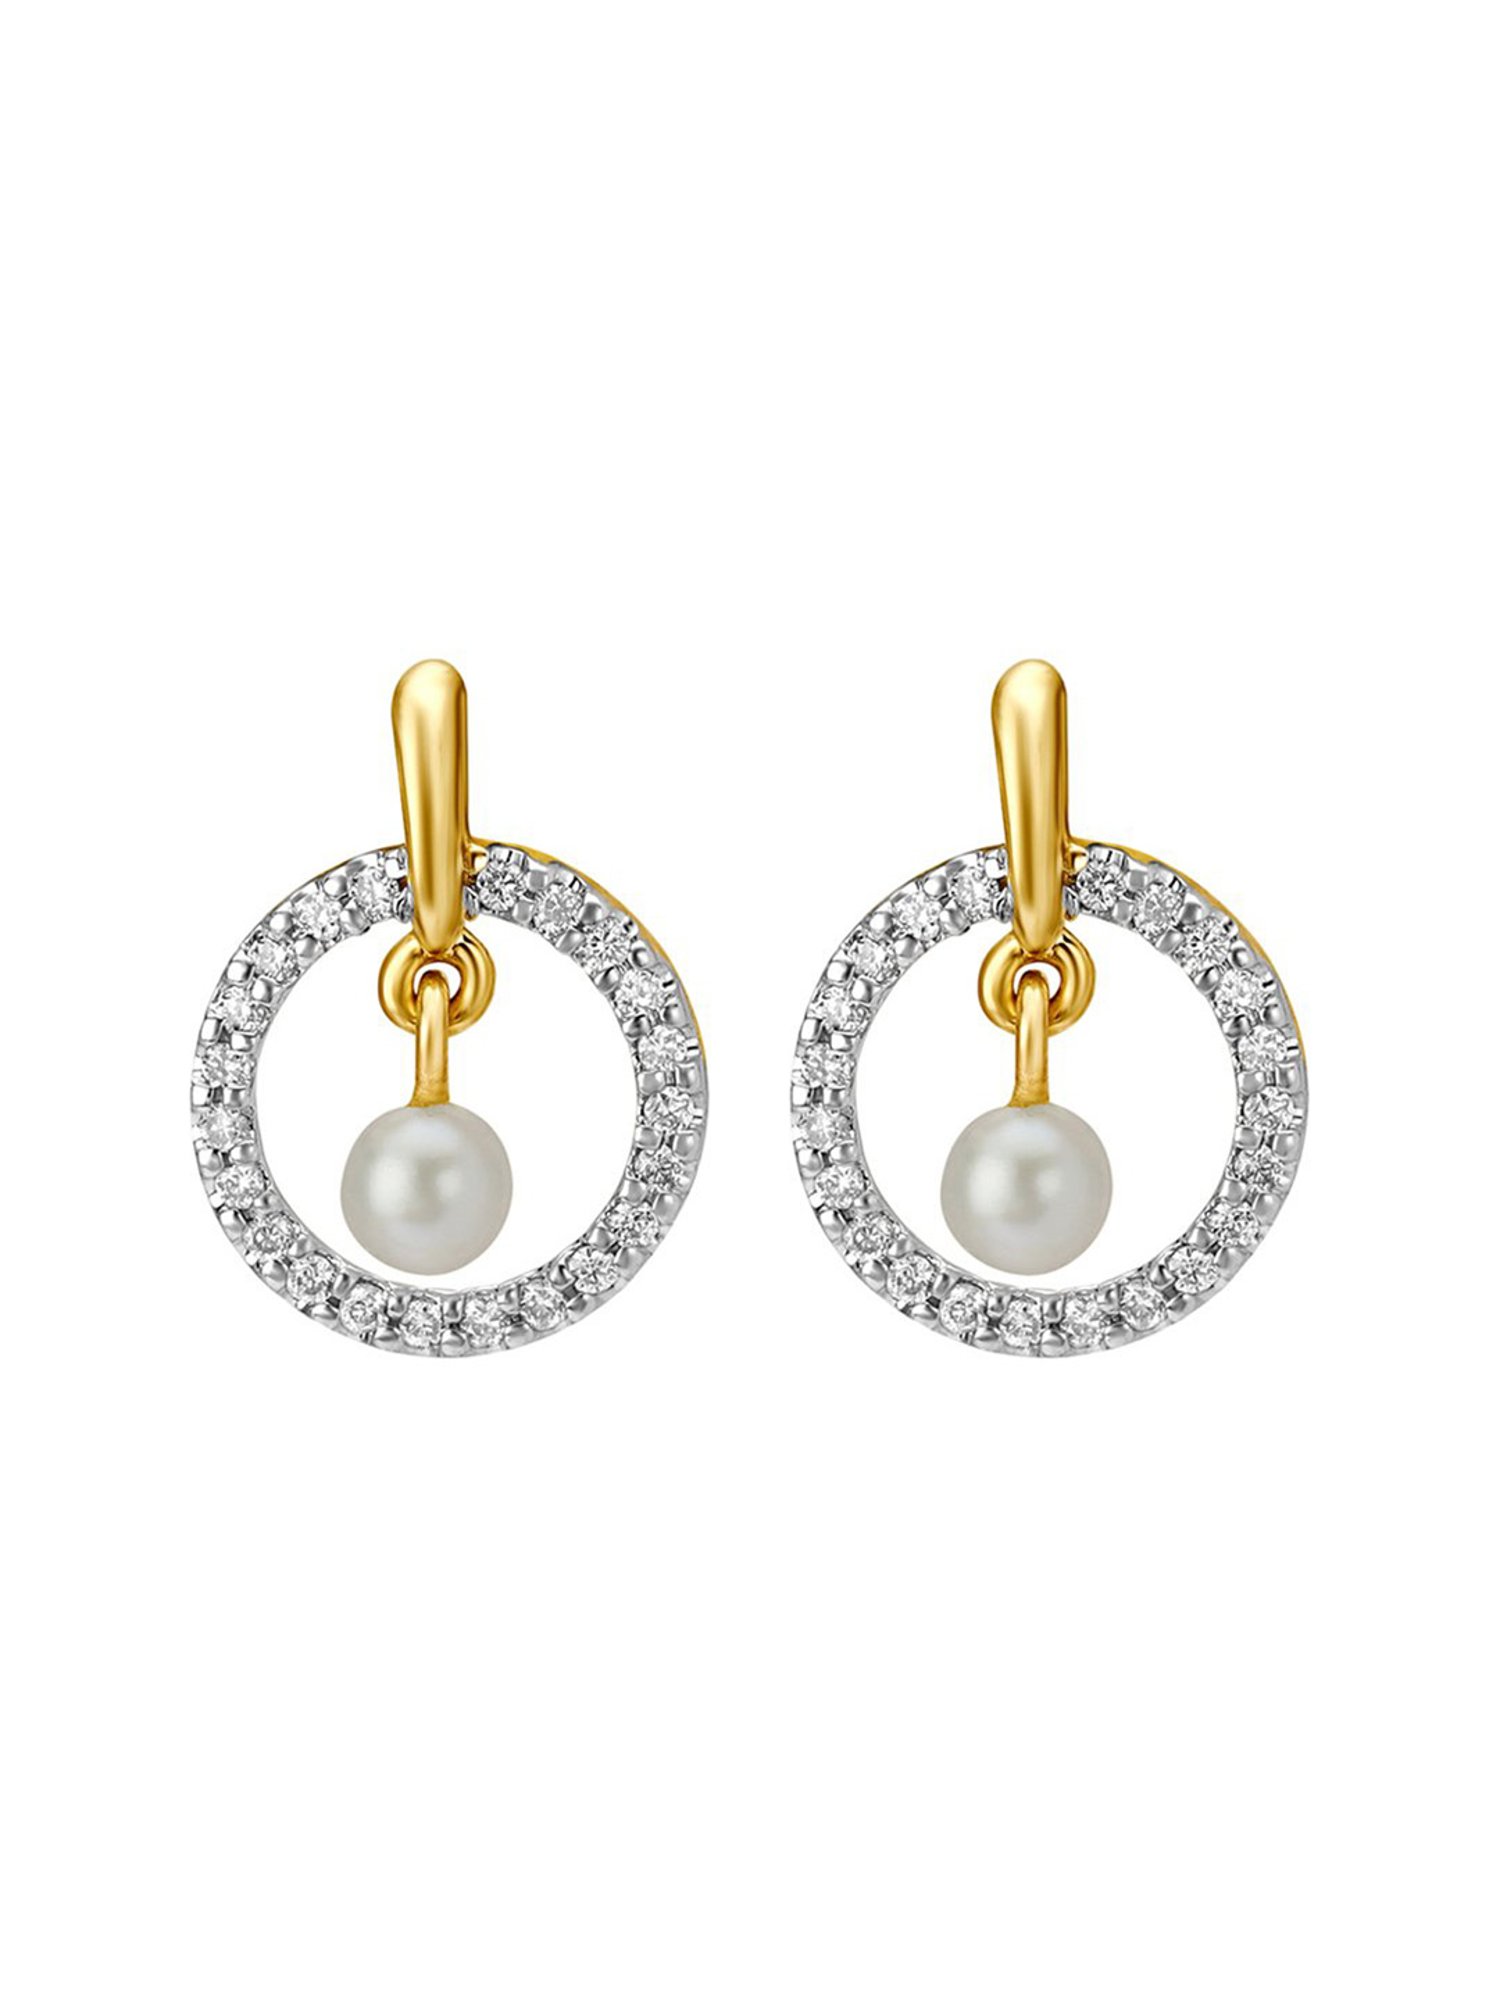 CaratLane A Tanishq Partnership  Simple Flower Pearl Earrings Rs 10424   httpgoogljnbTm7  Facebook